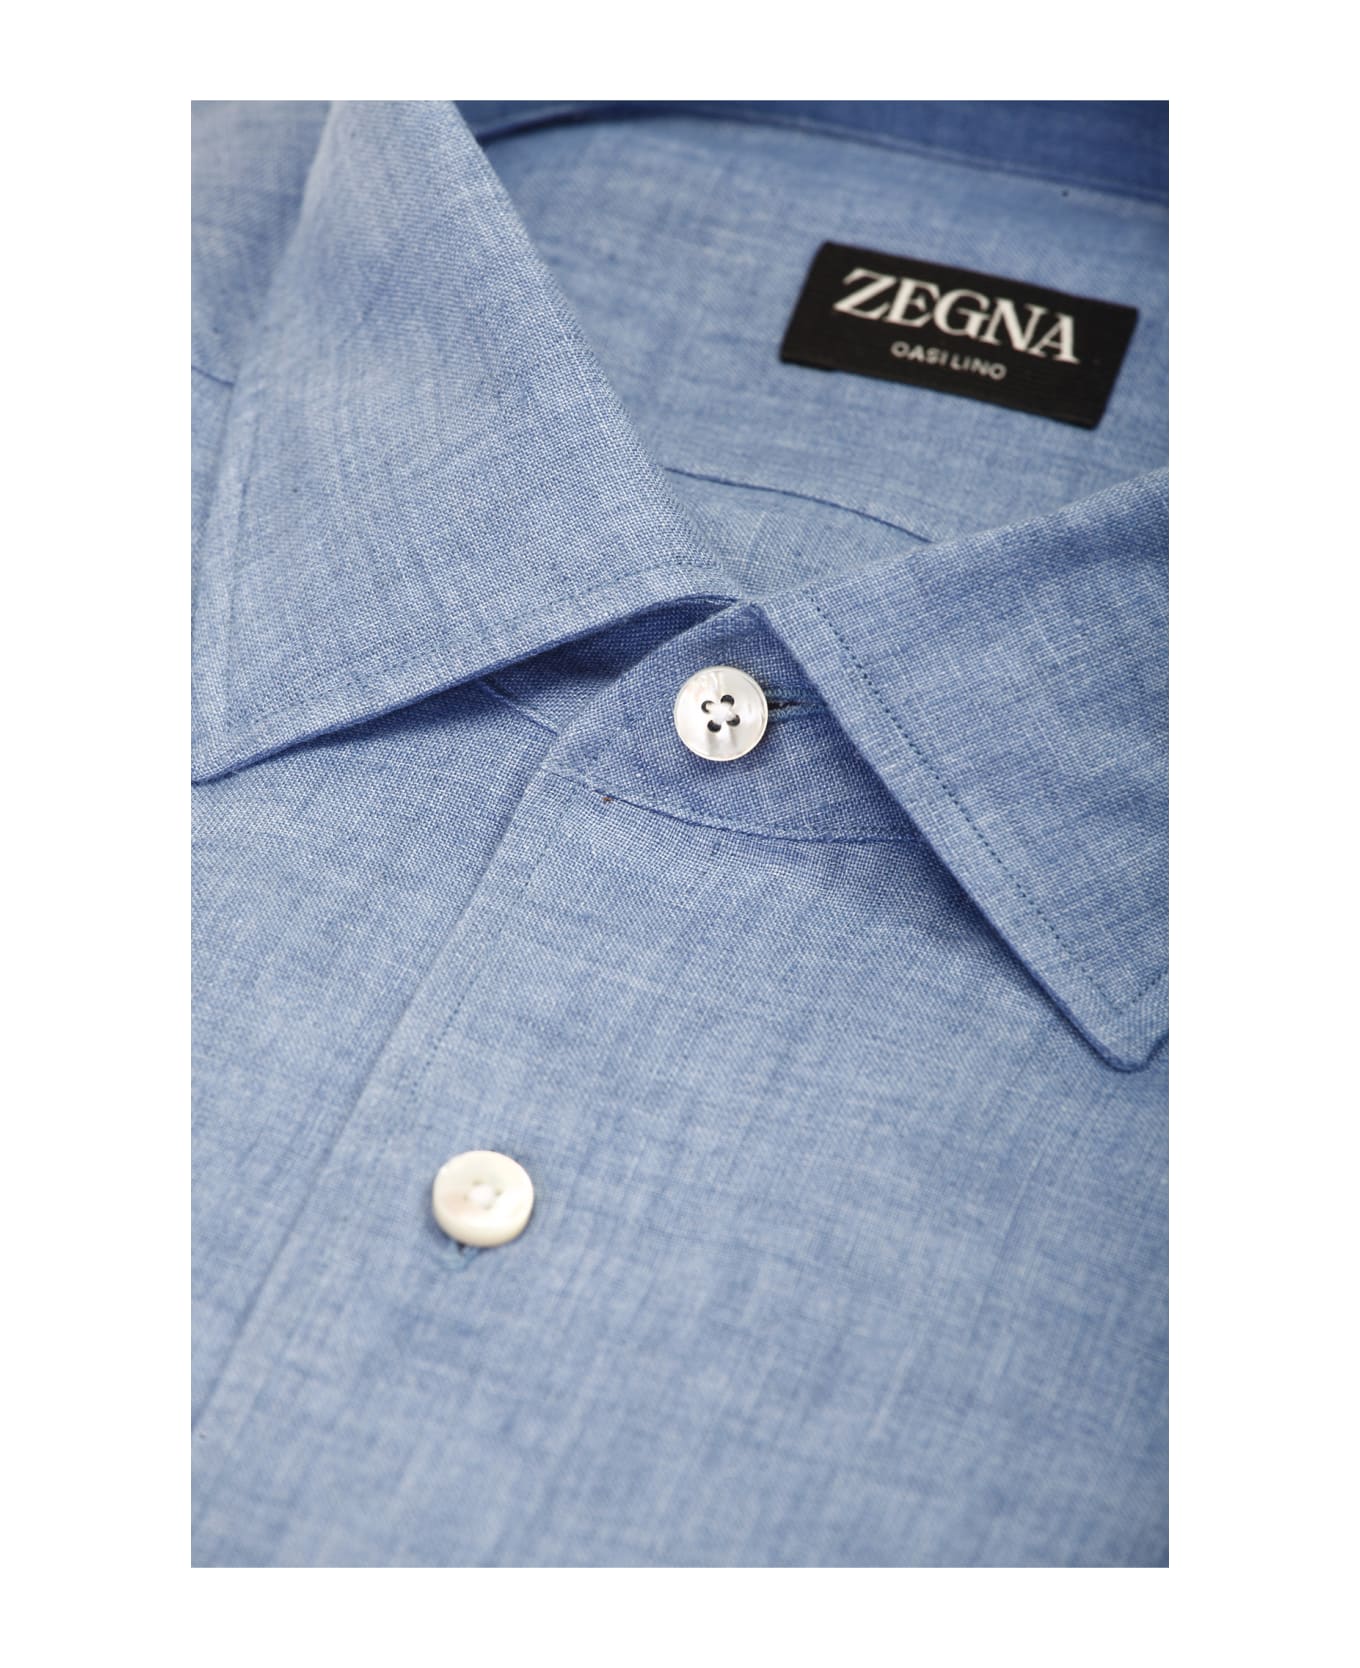 Zegna Shirts Light Blue - Light Blue